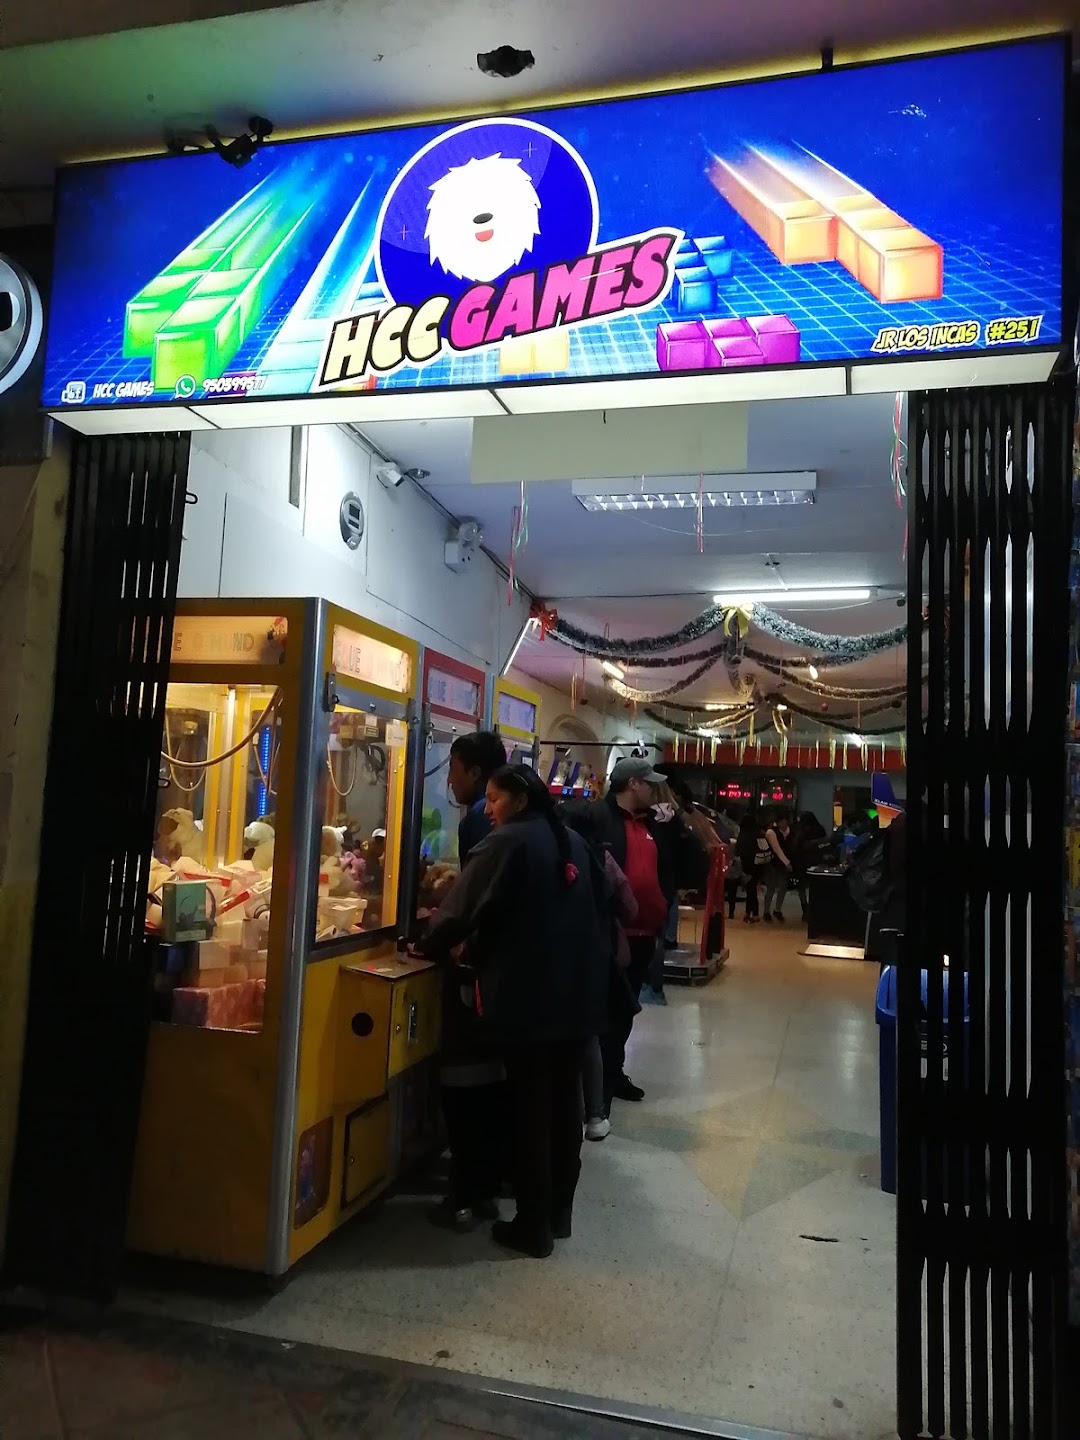 Salon De Juegos Arcade Y Simulacion Hcc - Games